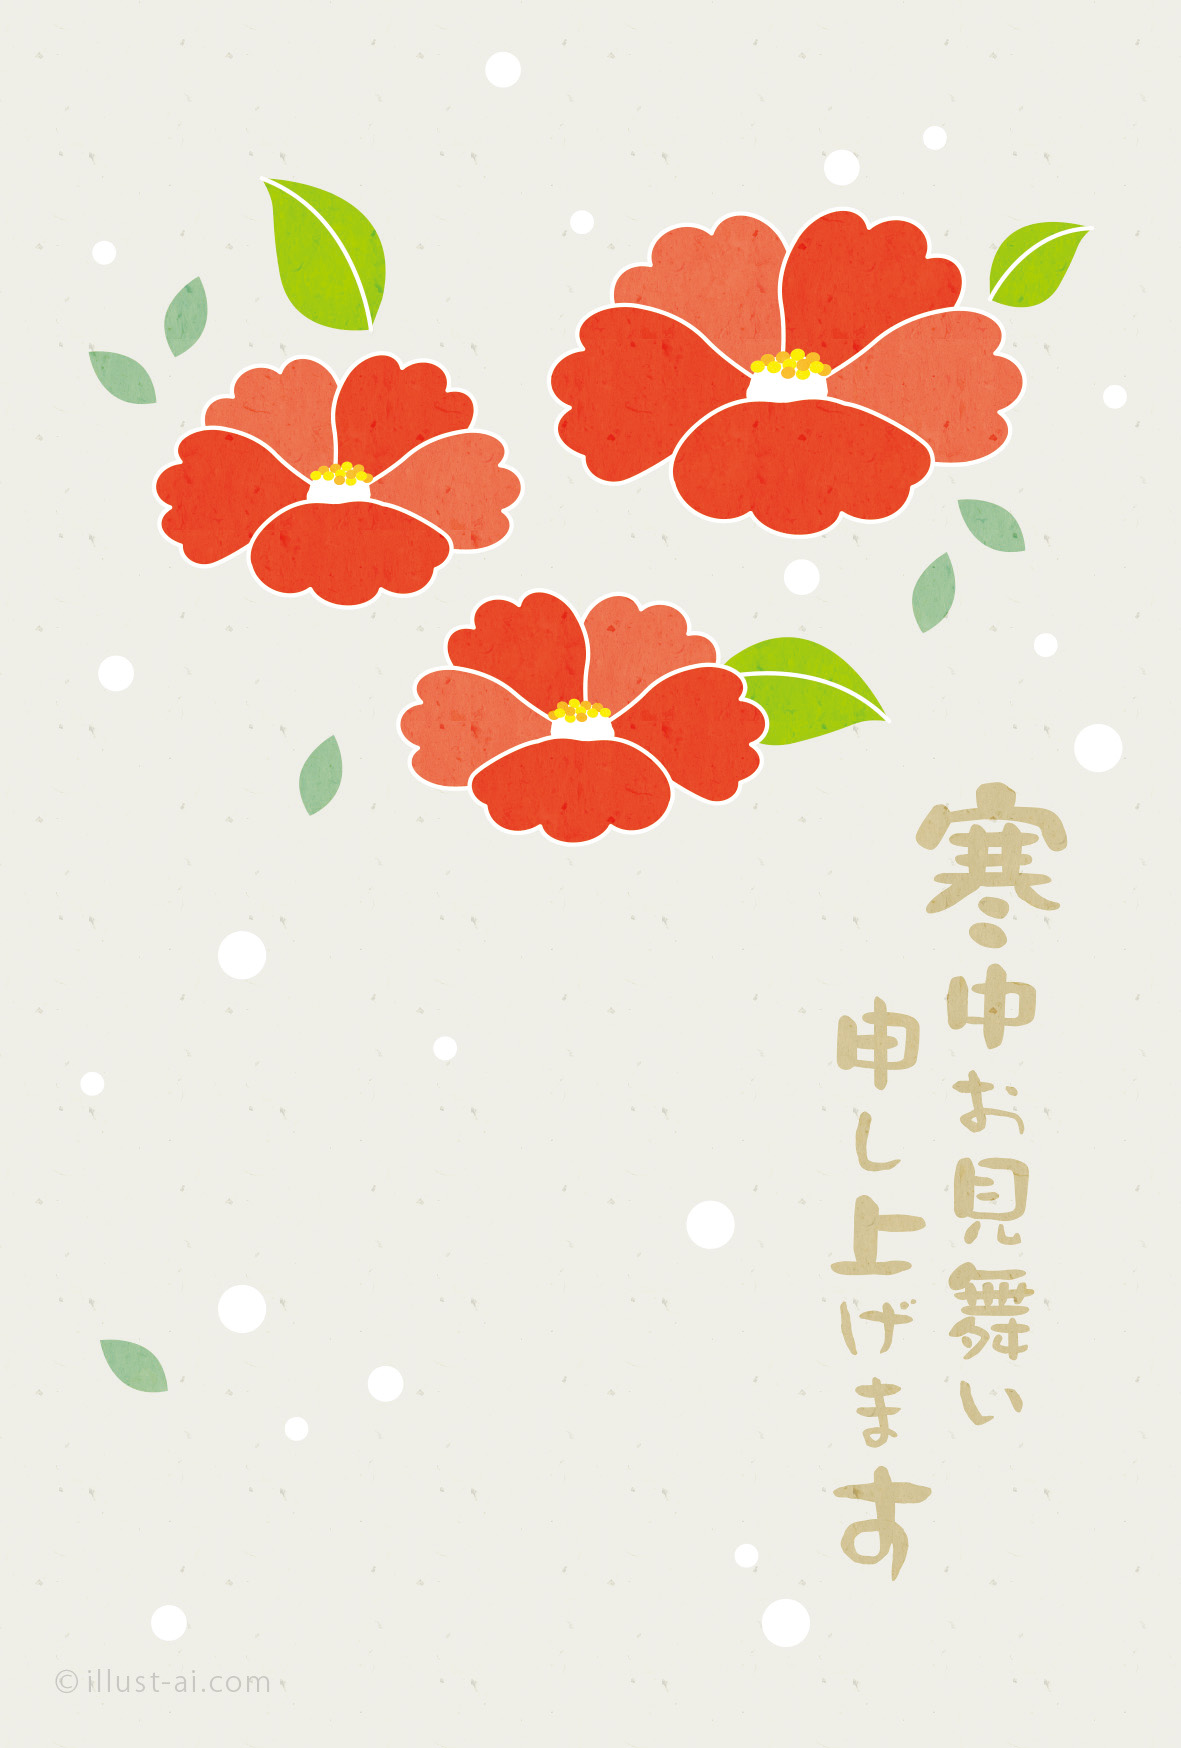 鮮やかに咲く椿 寒中お見舞い19 ポストカード イラスト素材サイト イラストareira Postcard Template